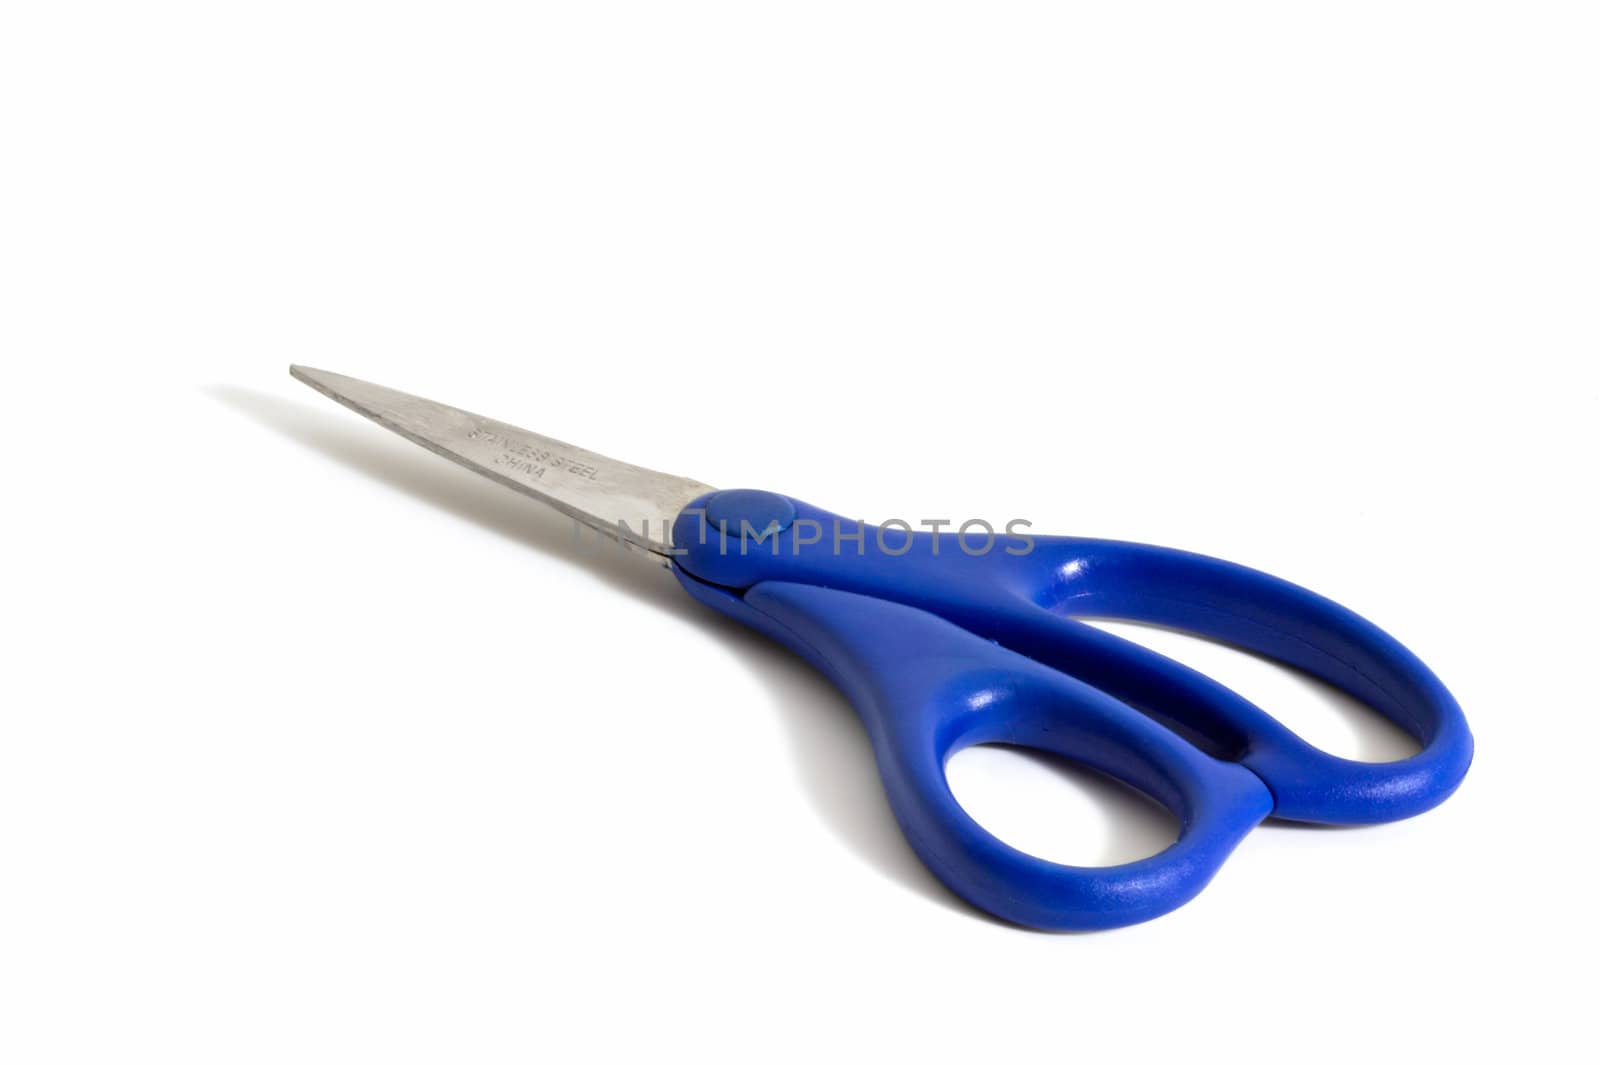 Blue Scissors by sbonk